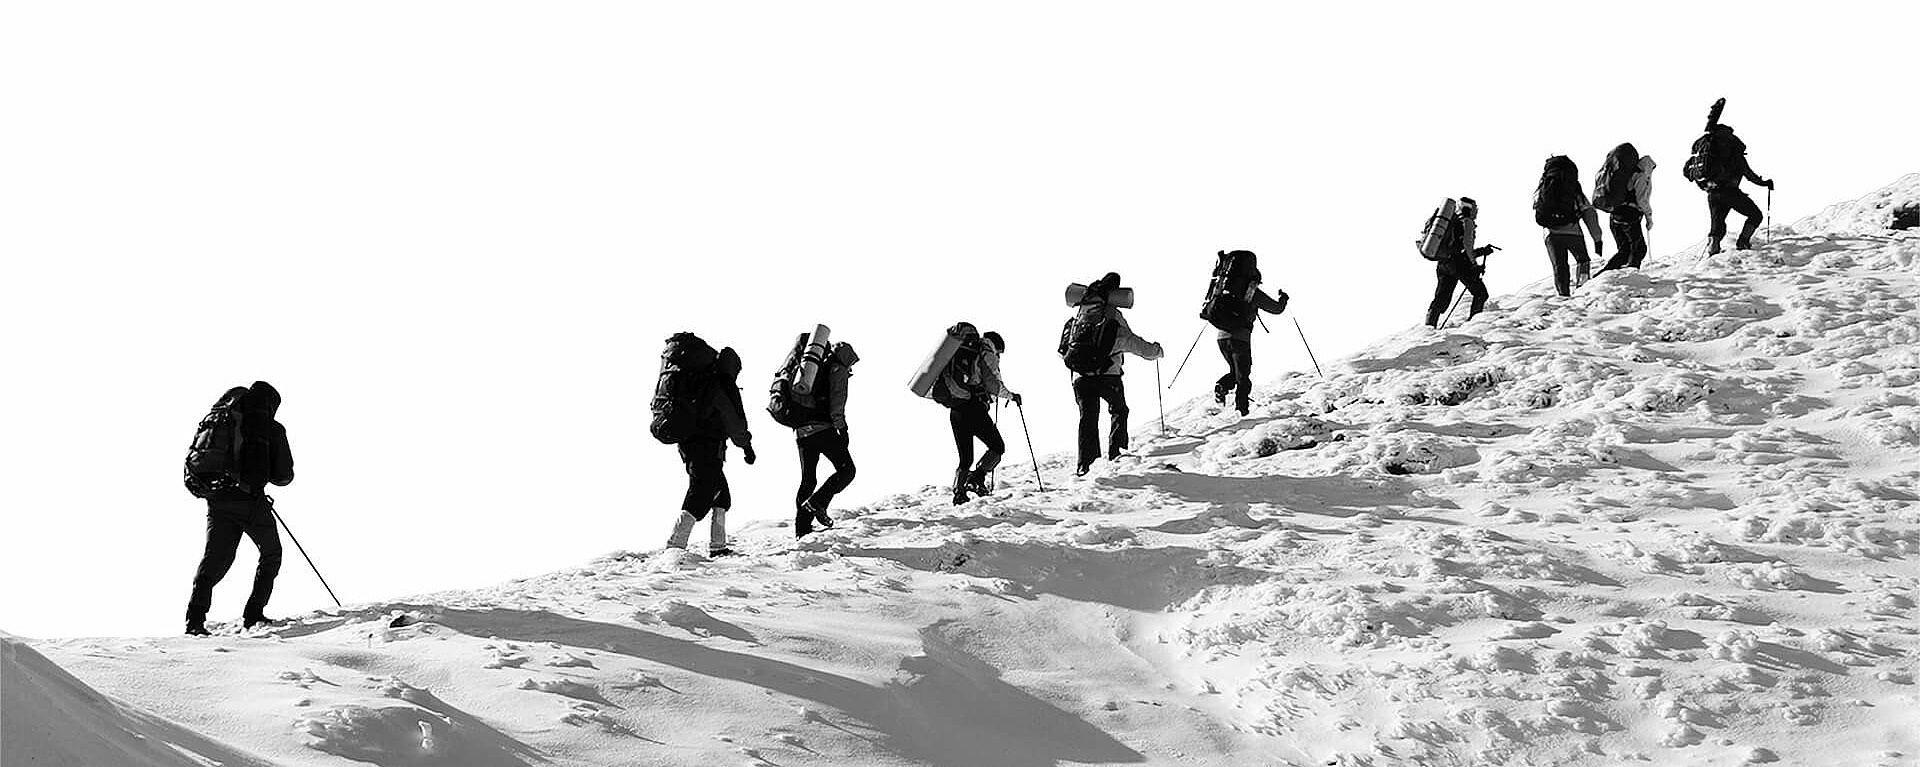 Bergsteiger erklimmen gemeinsam einen schneebedeckten Gipfle